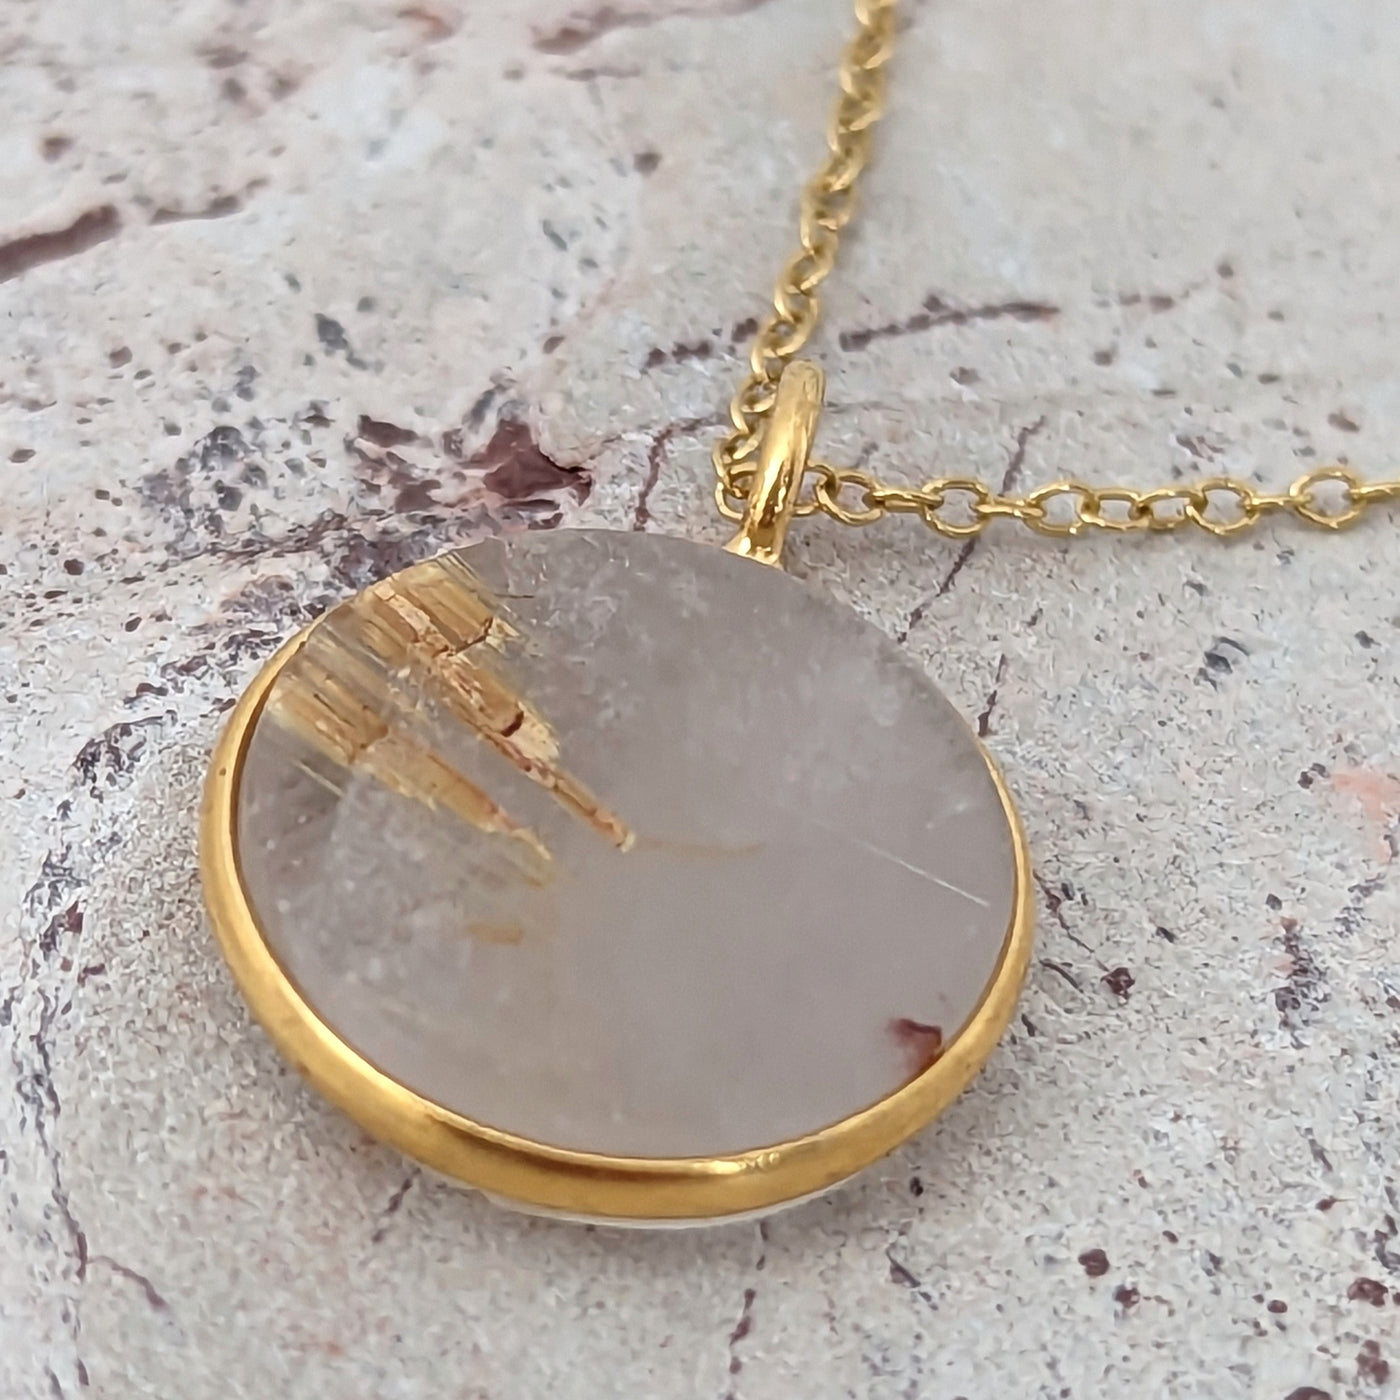 golden rutile quartz gemstone pendant necklace